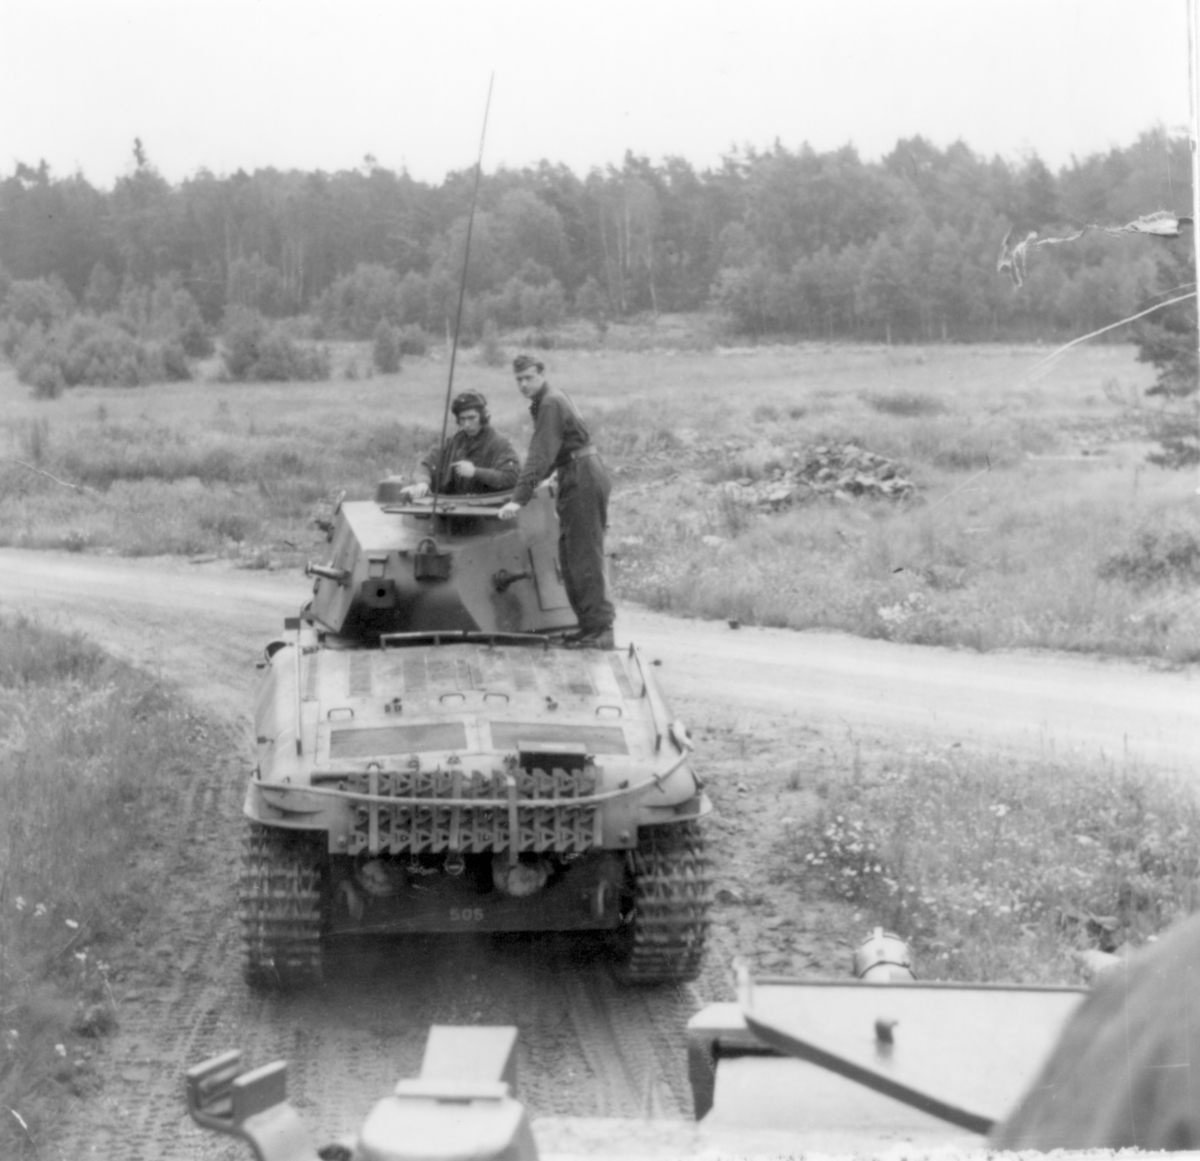 Lt Björn Orward står vid sidan av tornet på en stridsvagn m/42.

Milregnr: 505